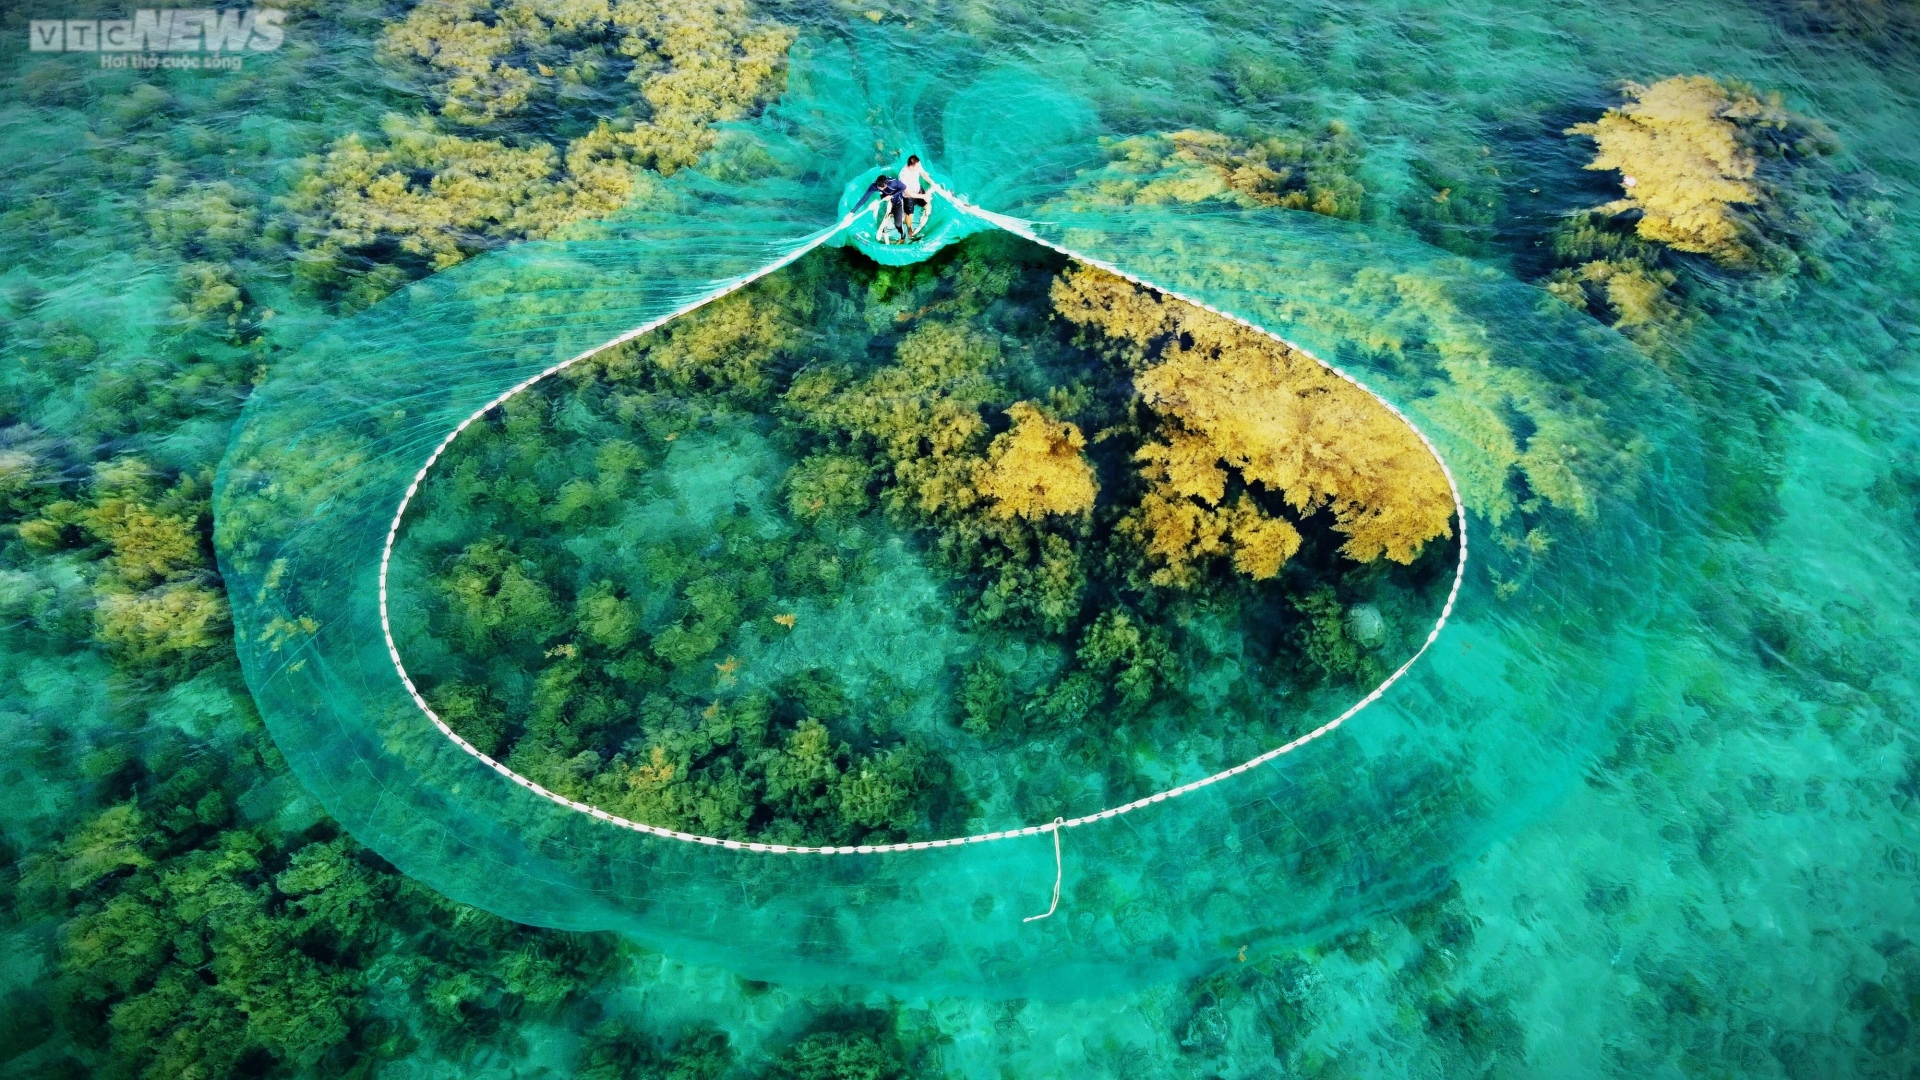 Ngất ngây 'cánh đồng vàng' dưới biển xanh trong ở đảo Hòn Khô, Bình Định - 7